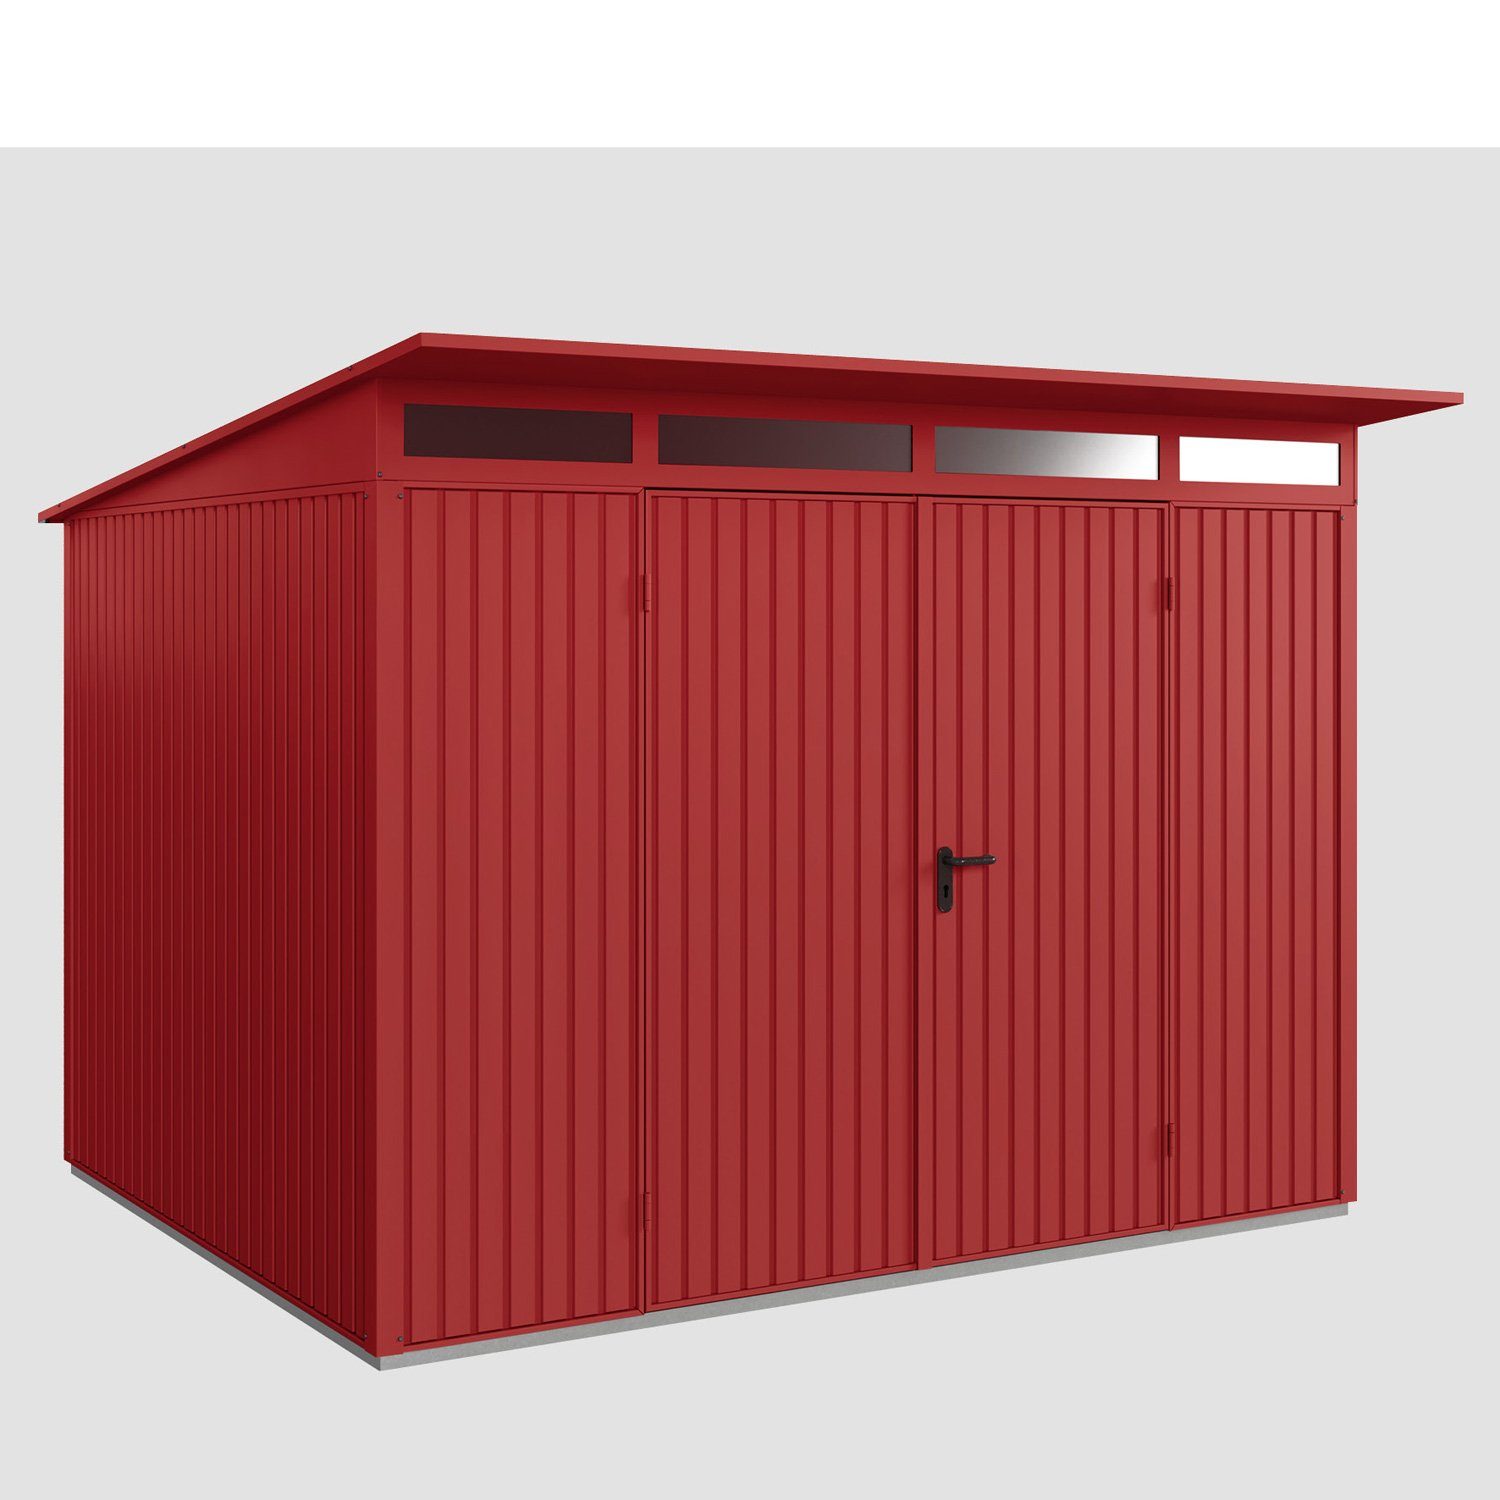 Hörmann Ecostar Gerätehaus Metall-Gerätehaus Trend mit Pultdach Typ 3, 2-flüglige Tür purpurrot